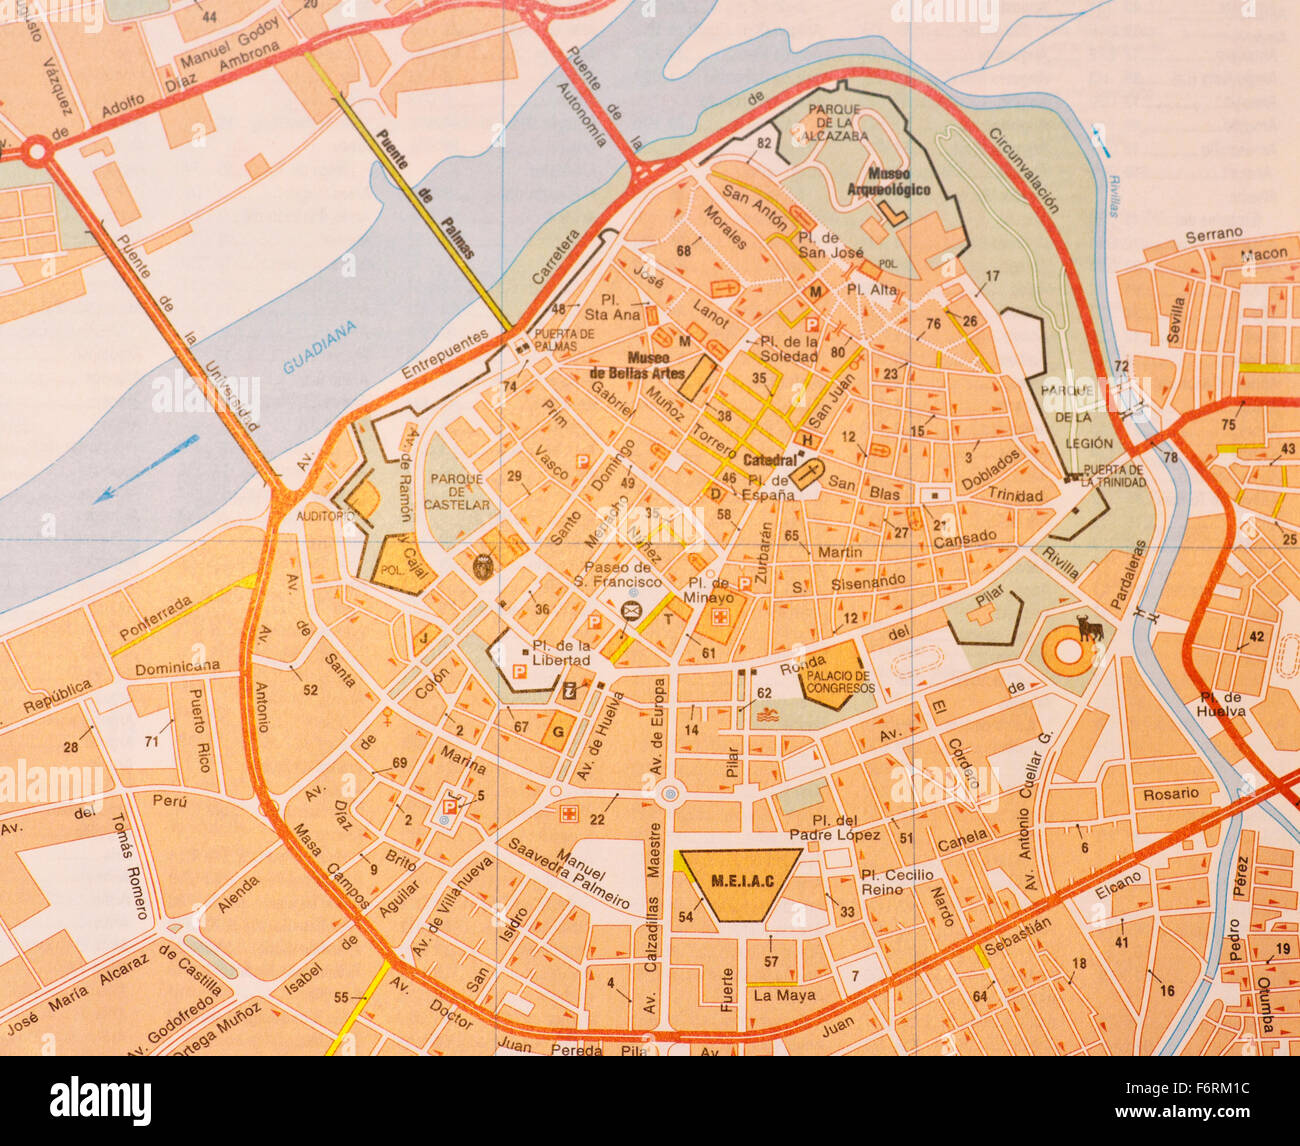 Mapa callejero de la ciudad española de Badajoz Fotografía de stock - Alamy